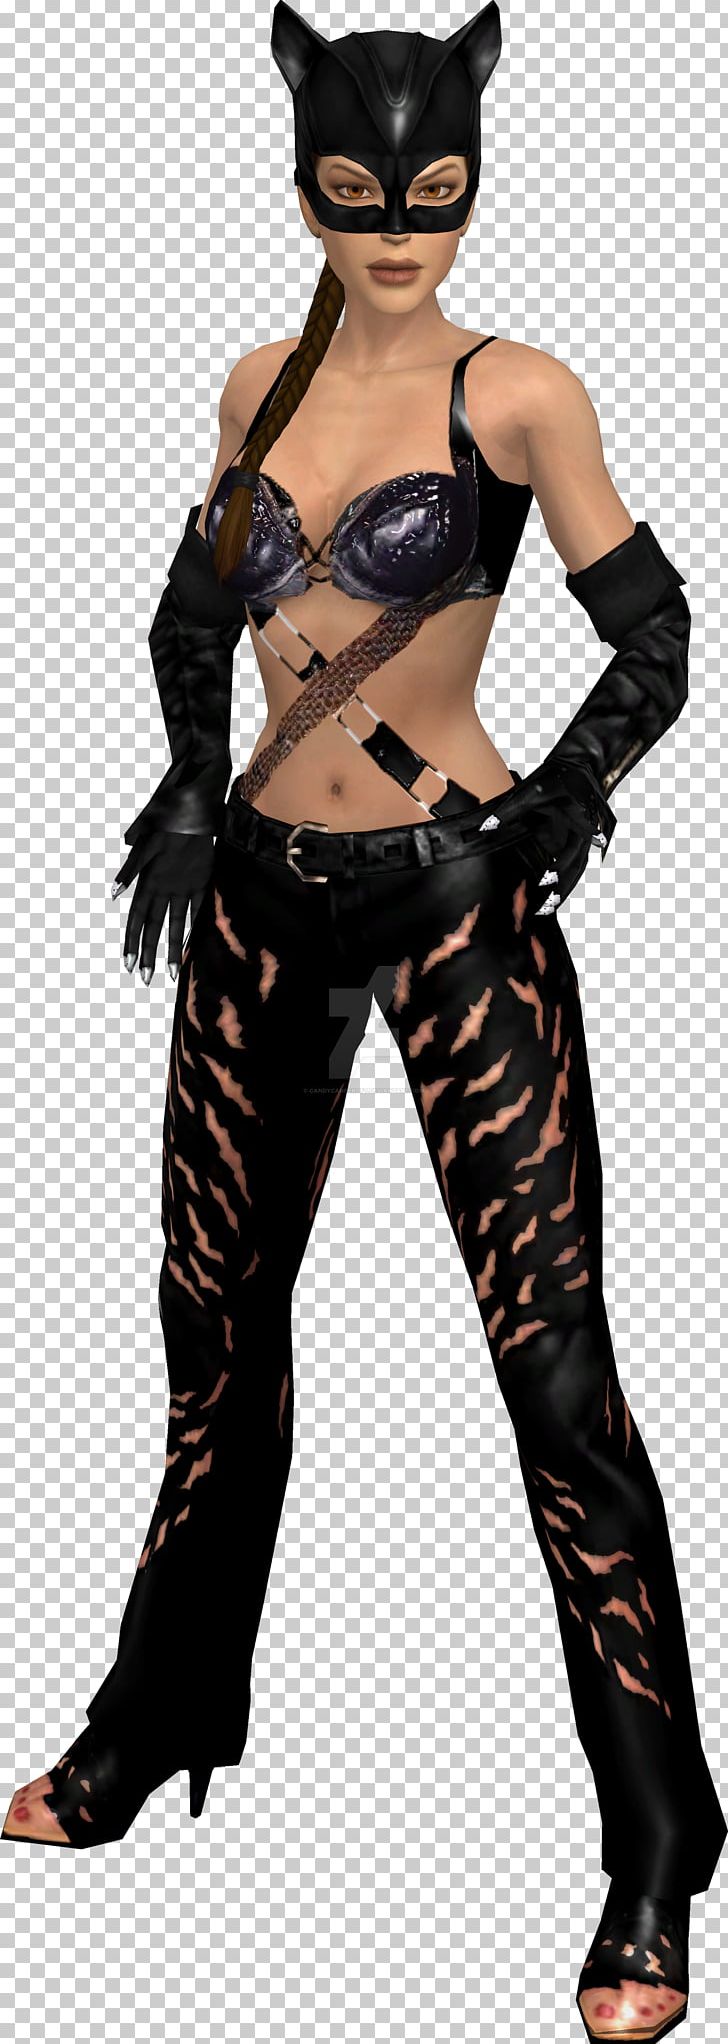 Catwoman Lara Croft Batman Talia Al Ghul Penguin PNG, Clipart, Batman, Catwoman, Costume, Costume Design, Dark Knight Rises Free PNG Download